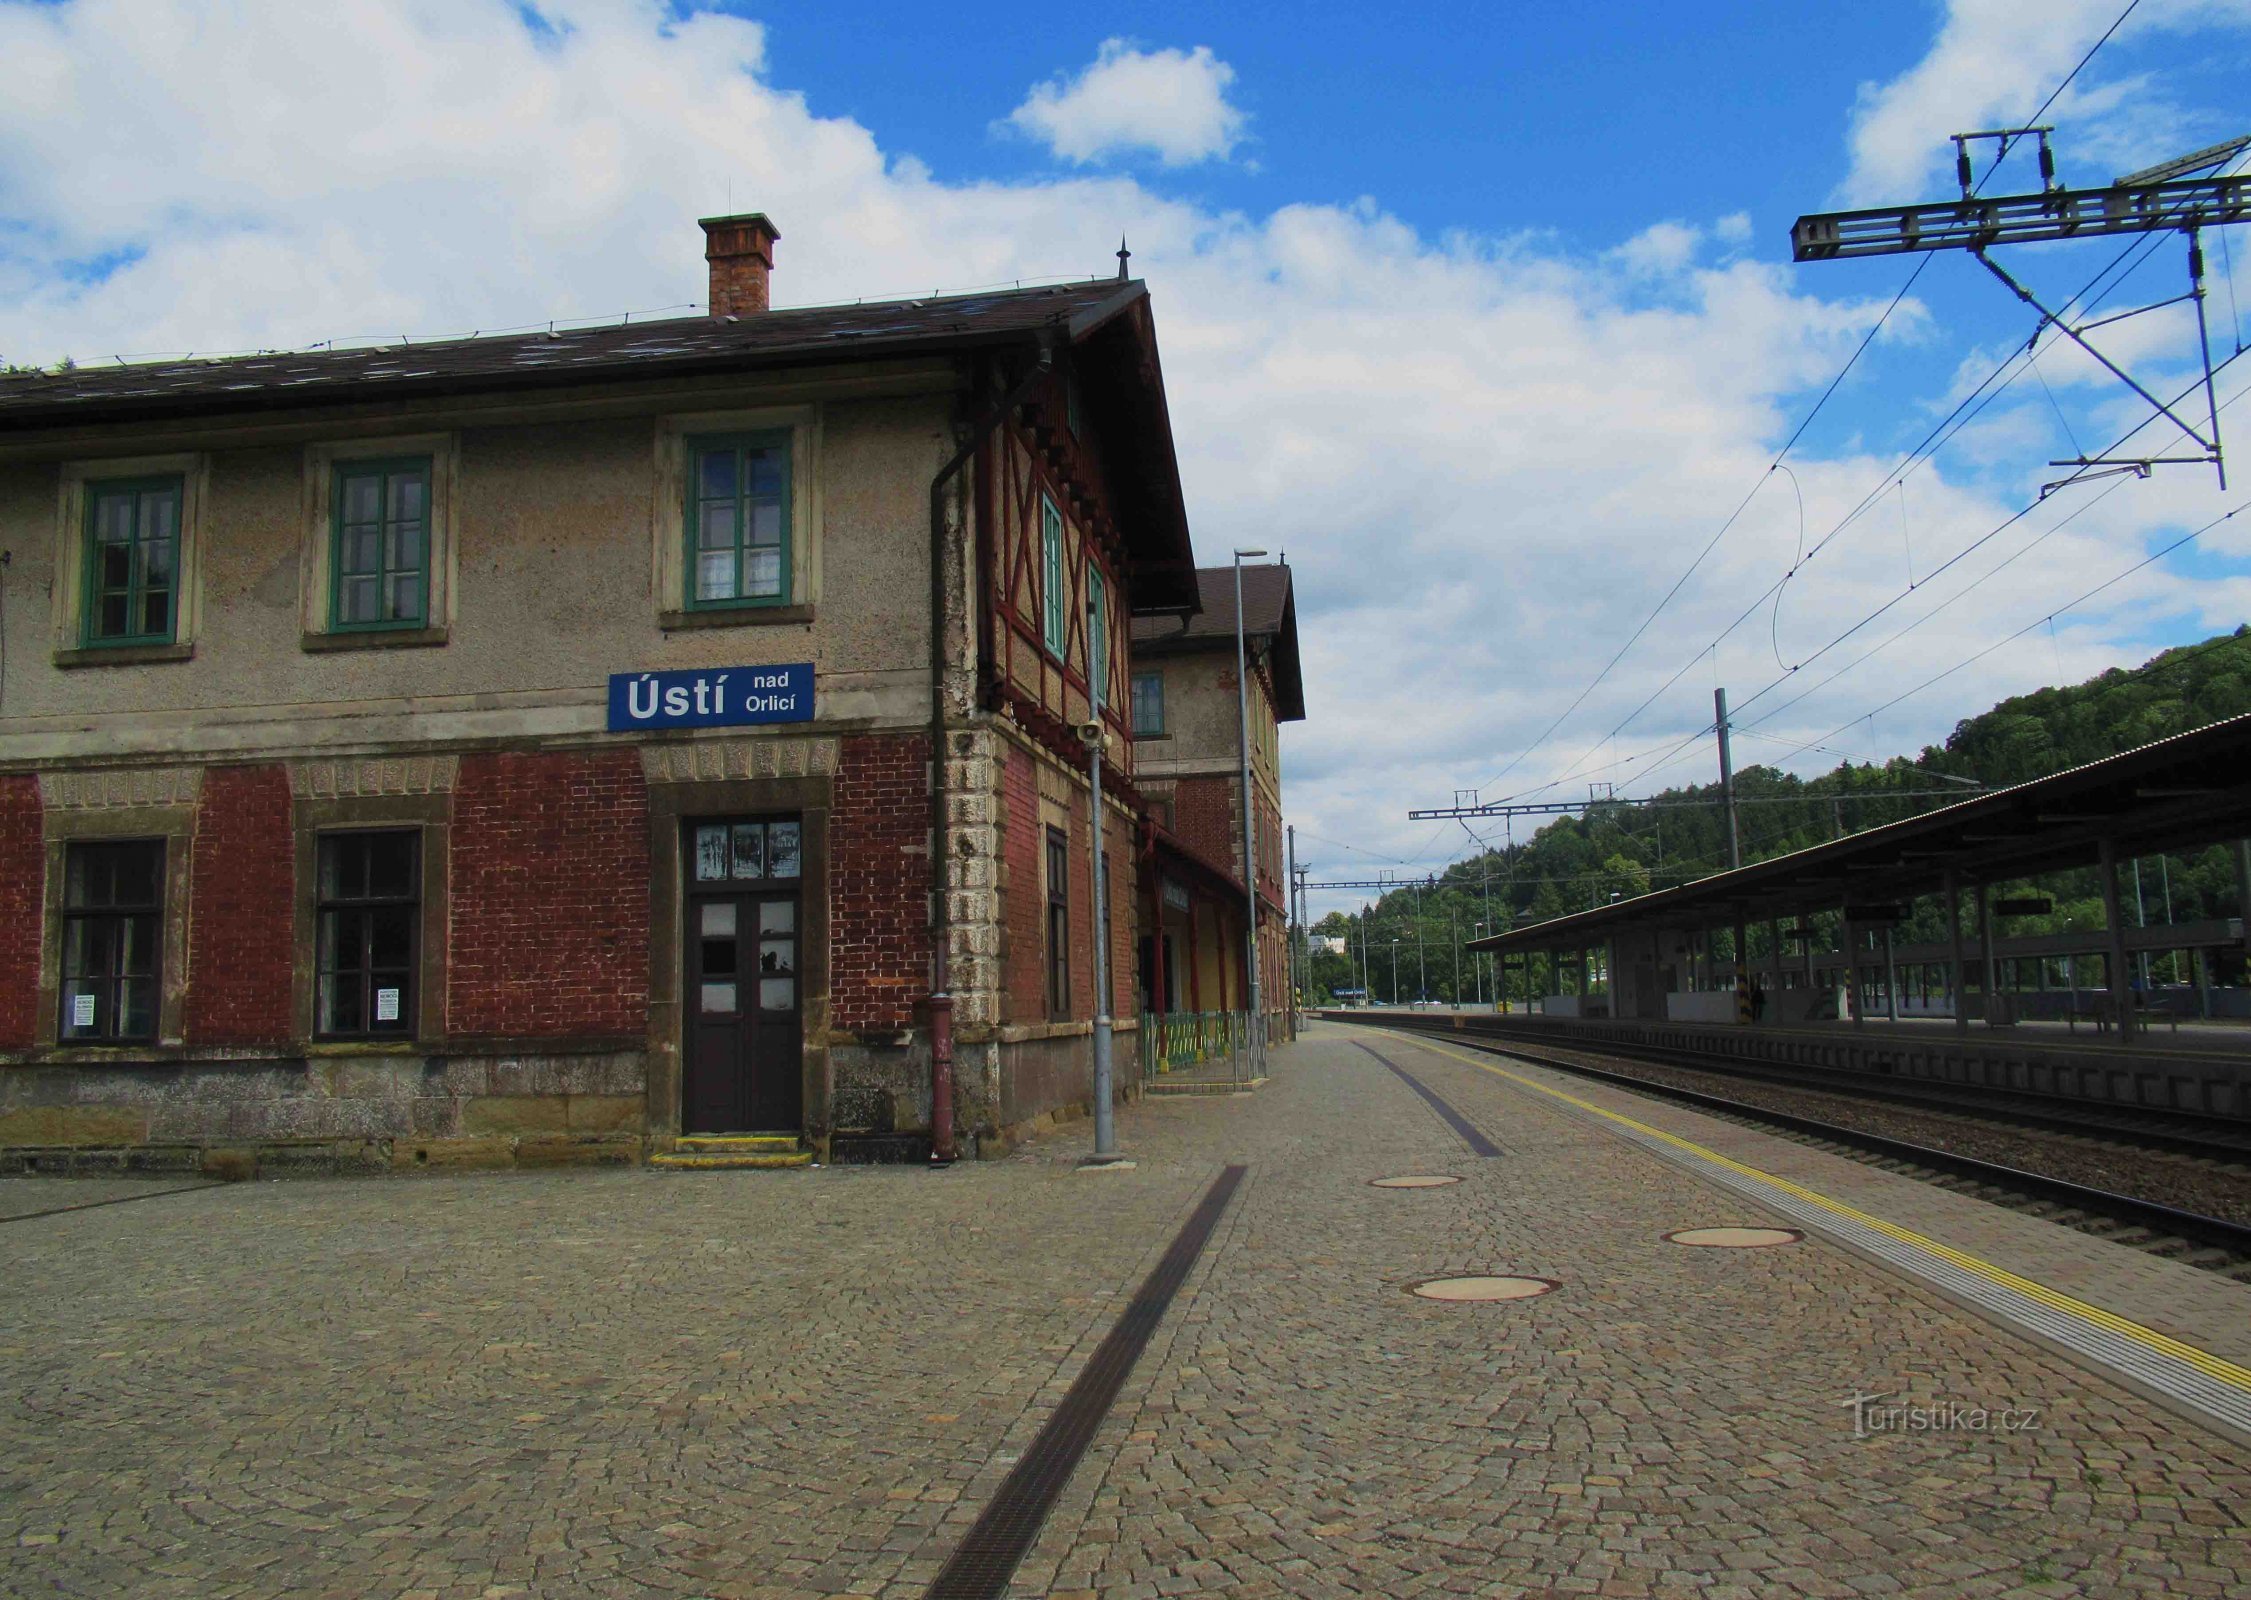 Az Ústí nad Orlicí vasútállomás történelmi épülete